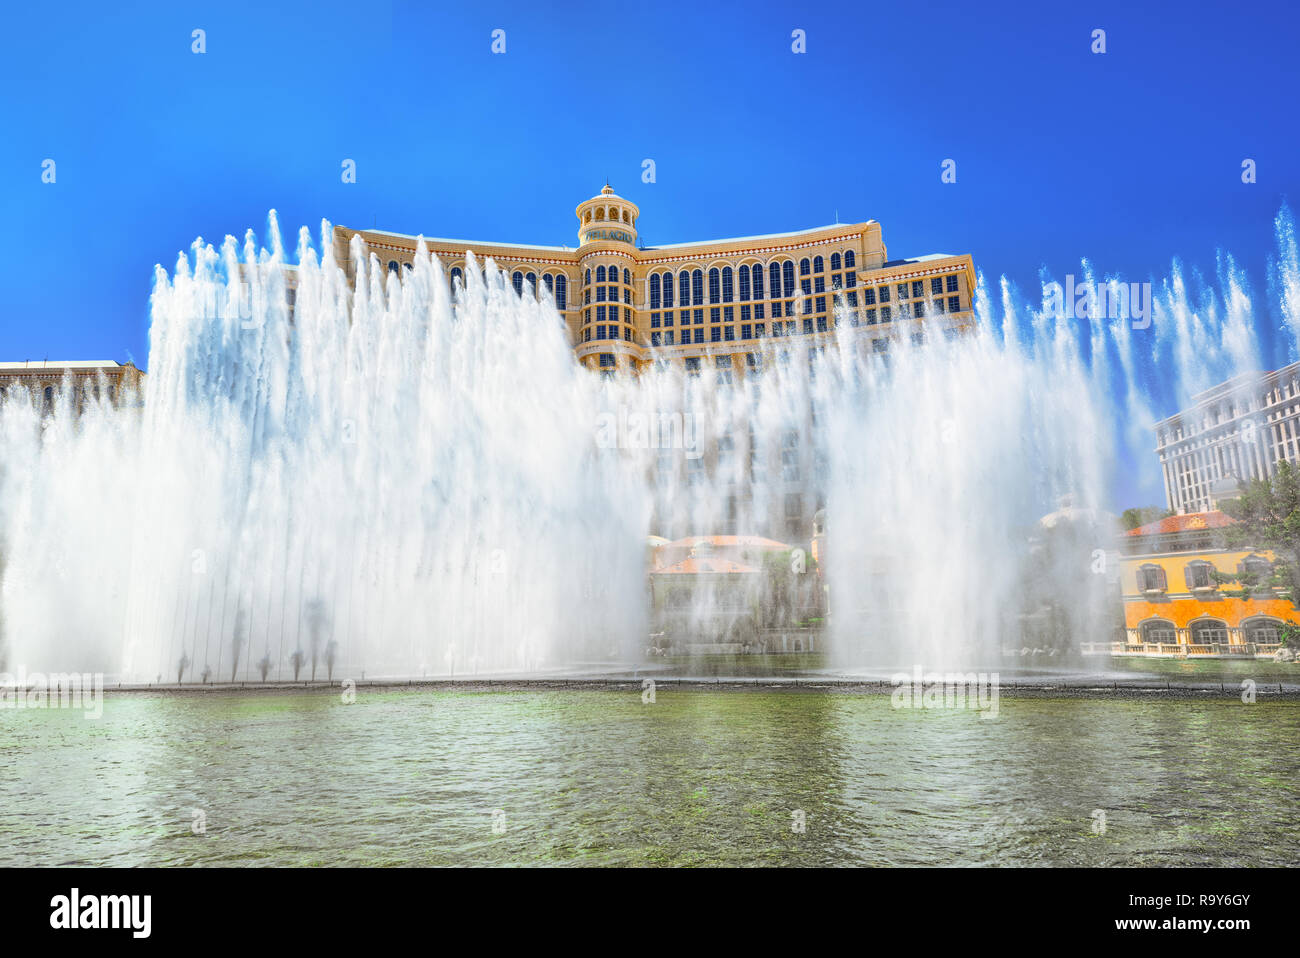 Las Vegas, Nevada, USA - September 16, 2018: Main street of Las Vegas is the Strip. Casino Bellagio. Stock Photo